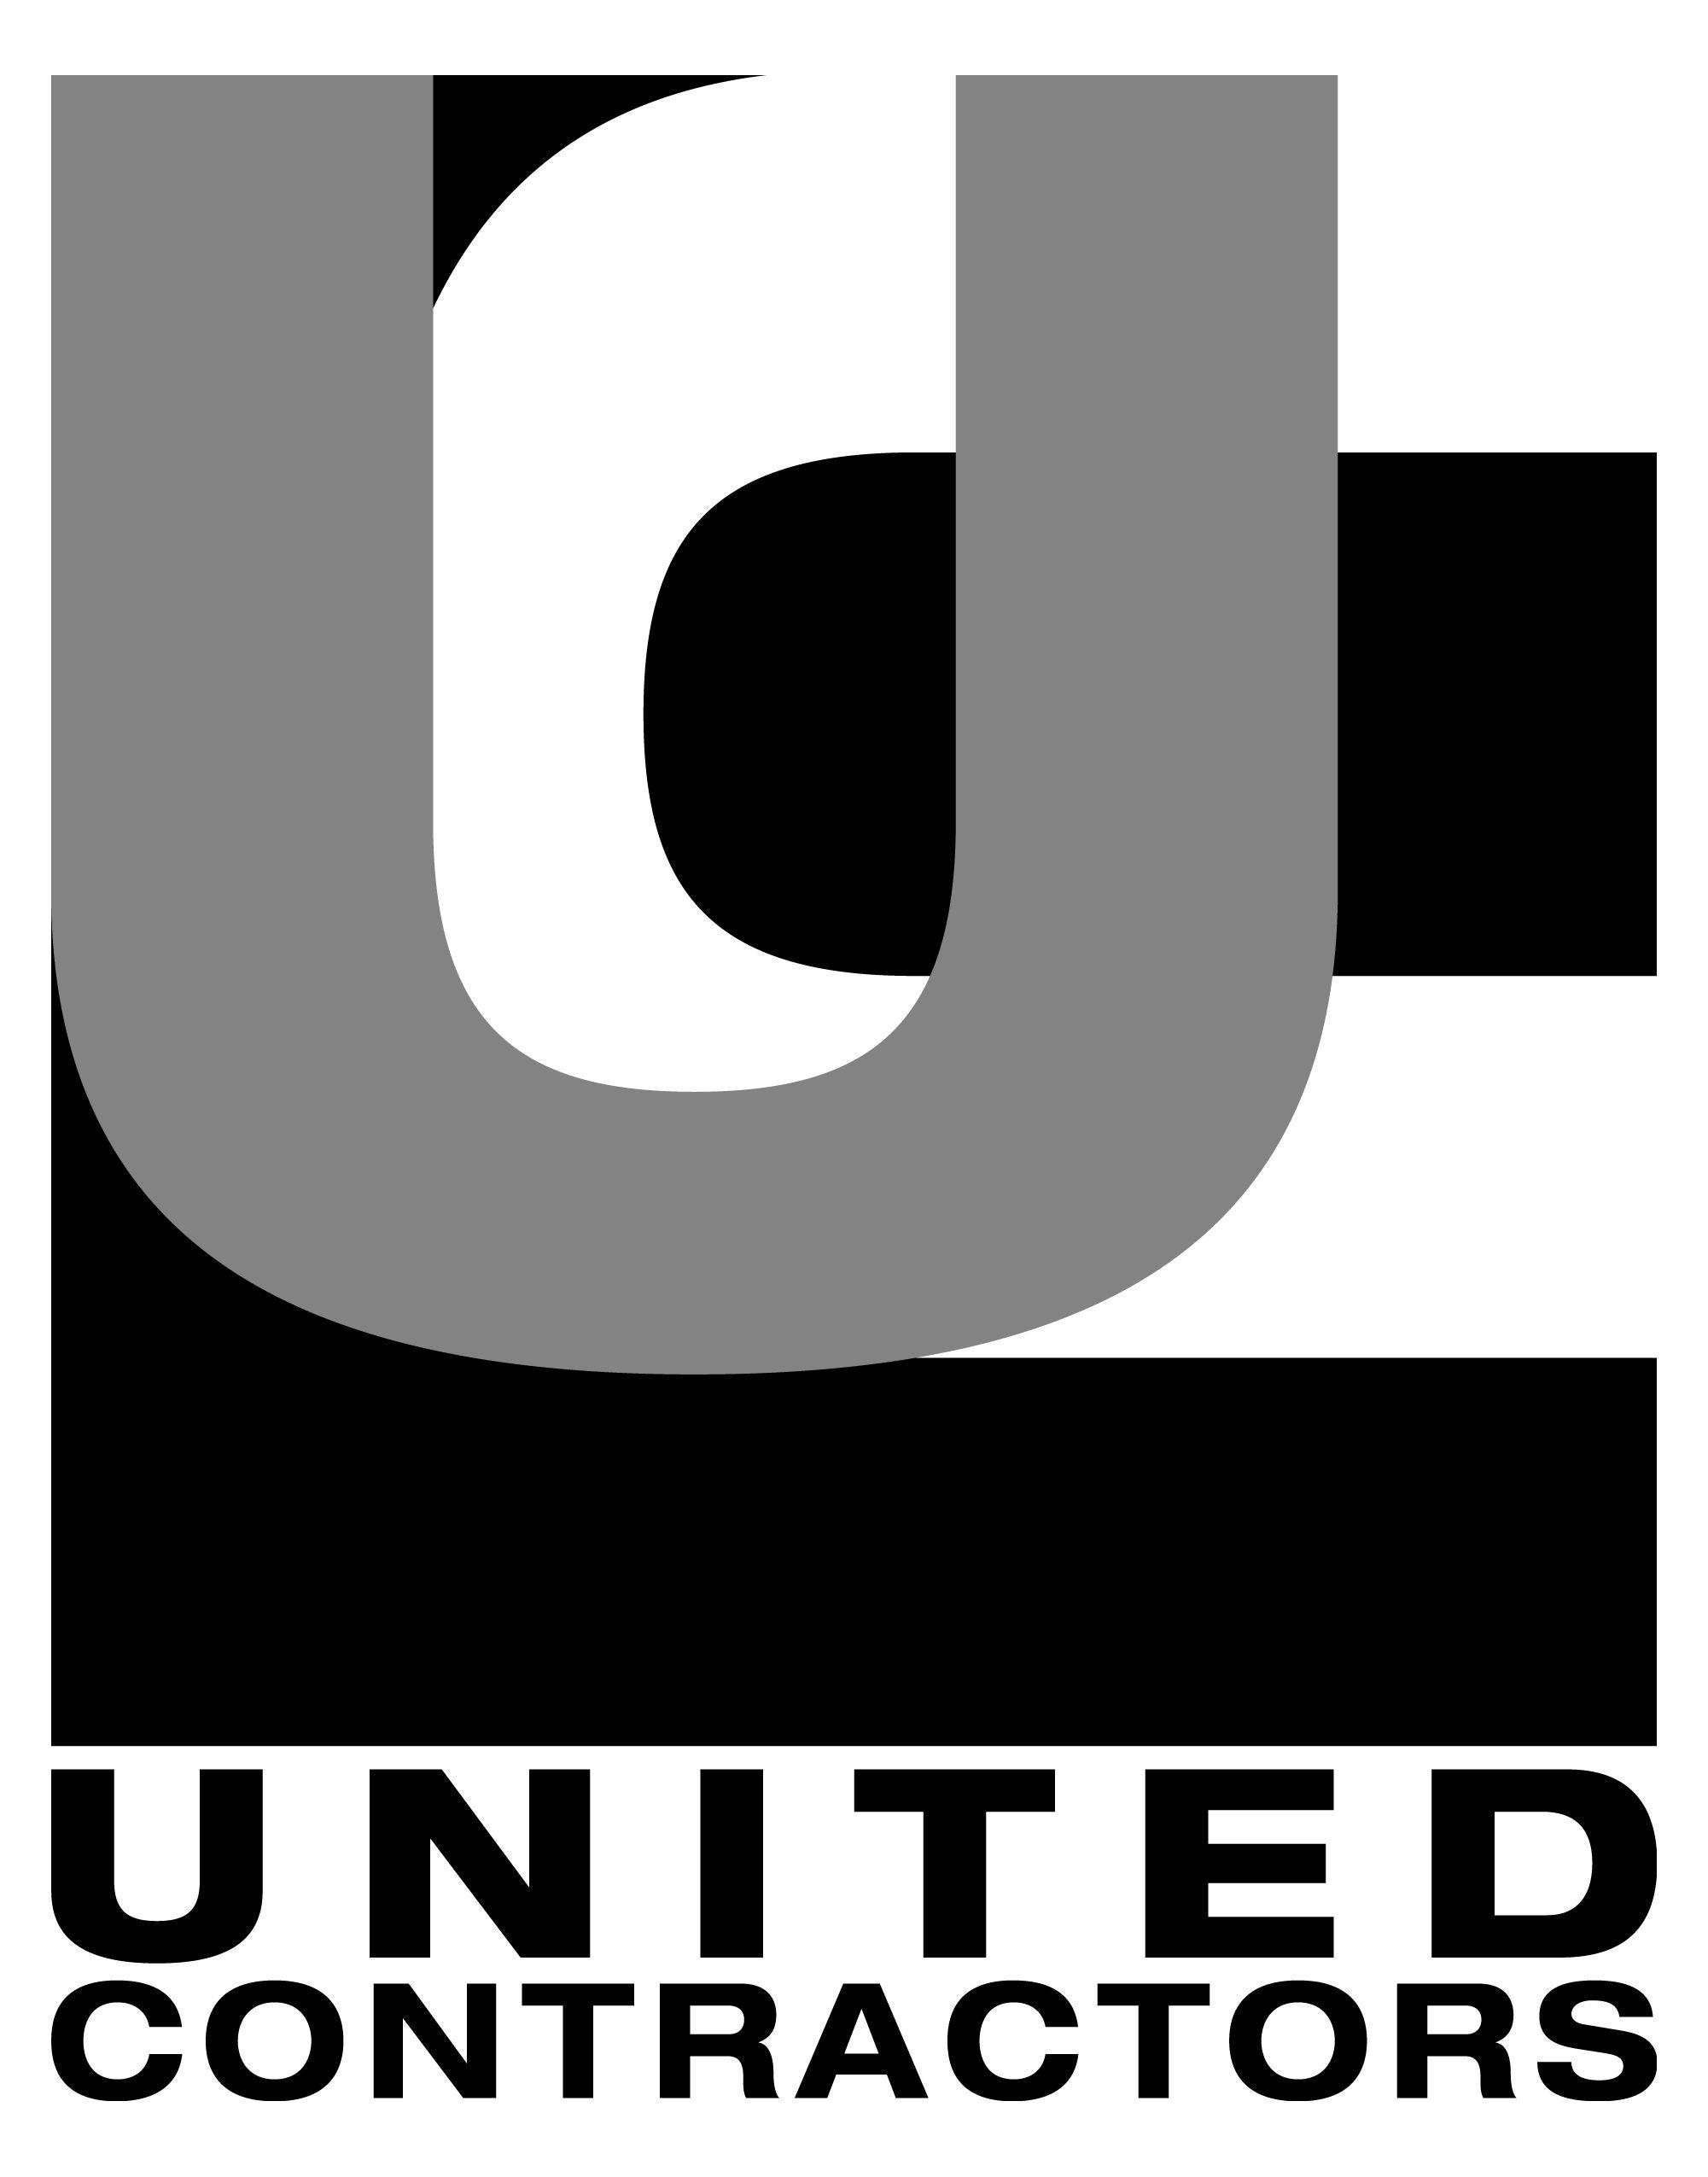 Contractors Logo - United Contractors Logos - United Contractors